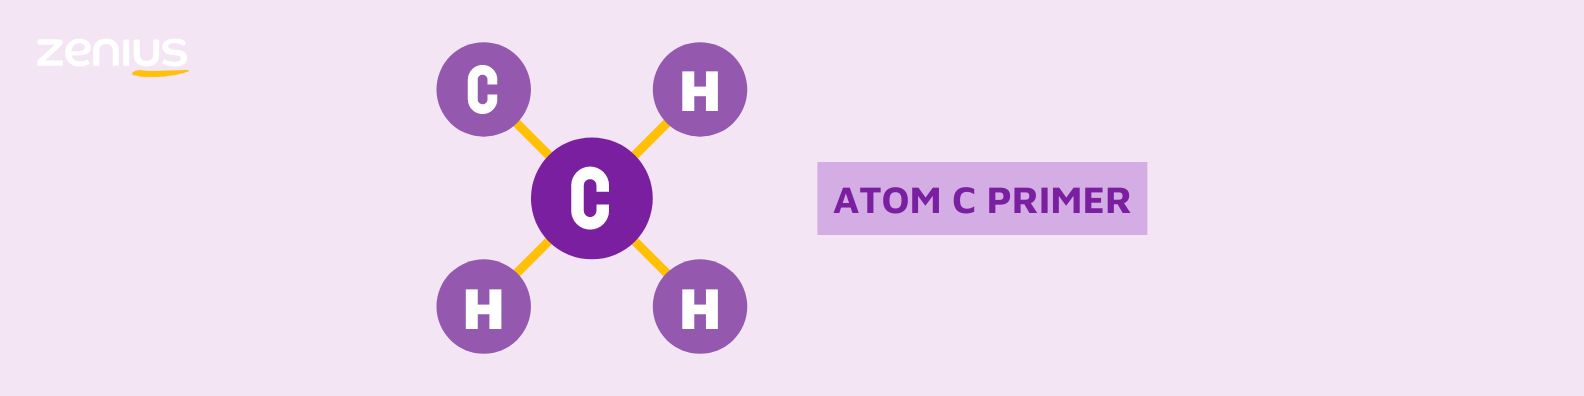 Atom C primer berarti suatu atom karbon hanya mengikat satu atom karbon lainnya